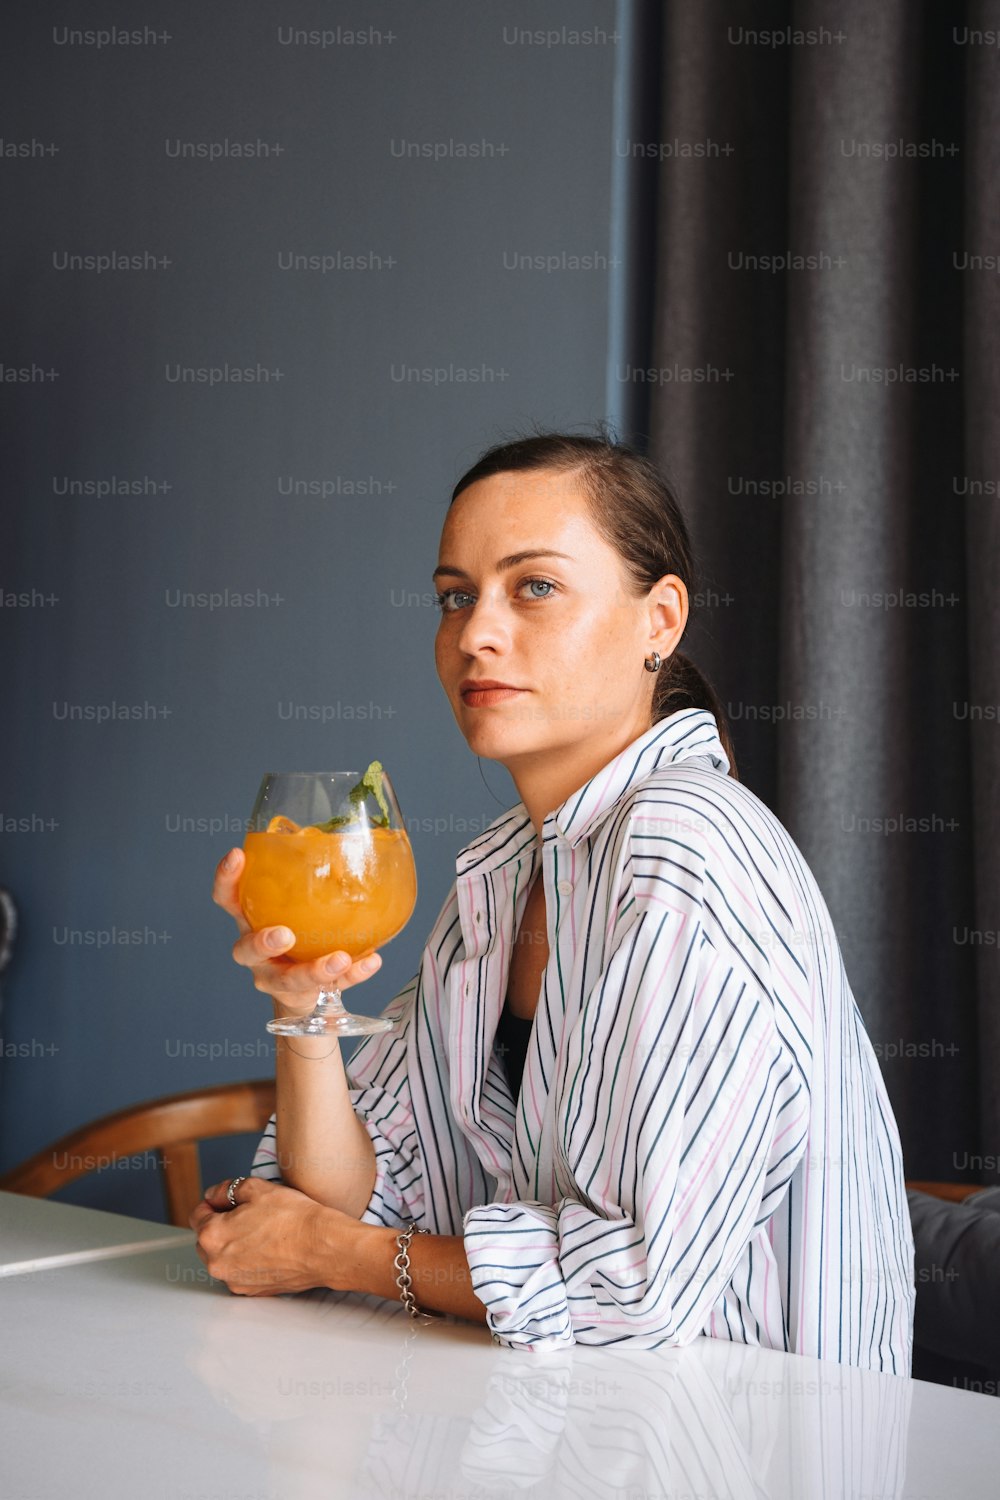 오렌지 주스 한 �잔을 들고 테이블에 앉아 있는 여자